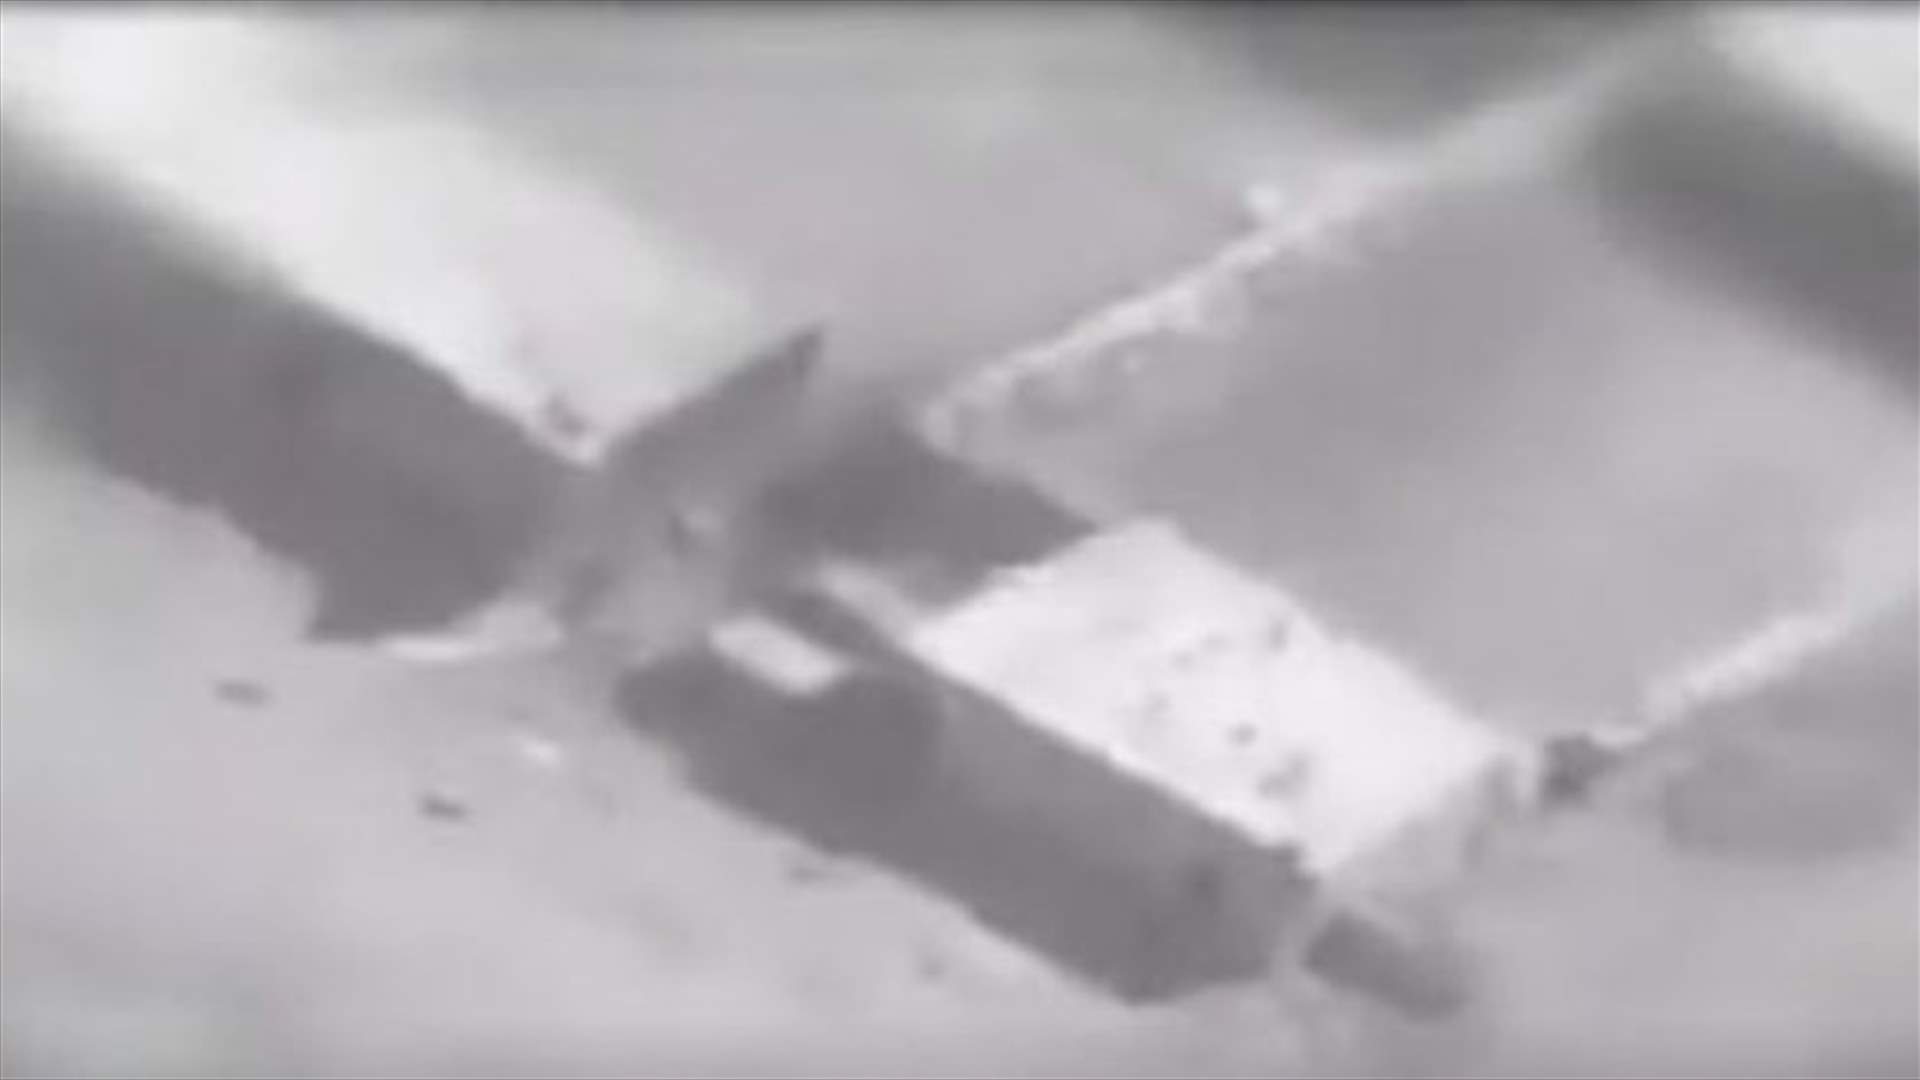 بالفيديو- الجيش يحقق إصابات مباشرة في صفوف الإرهابيين